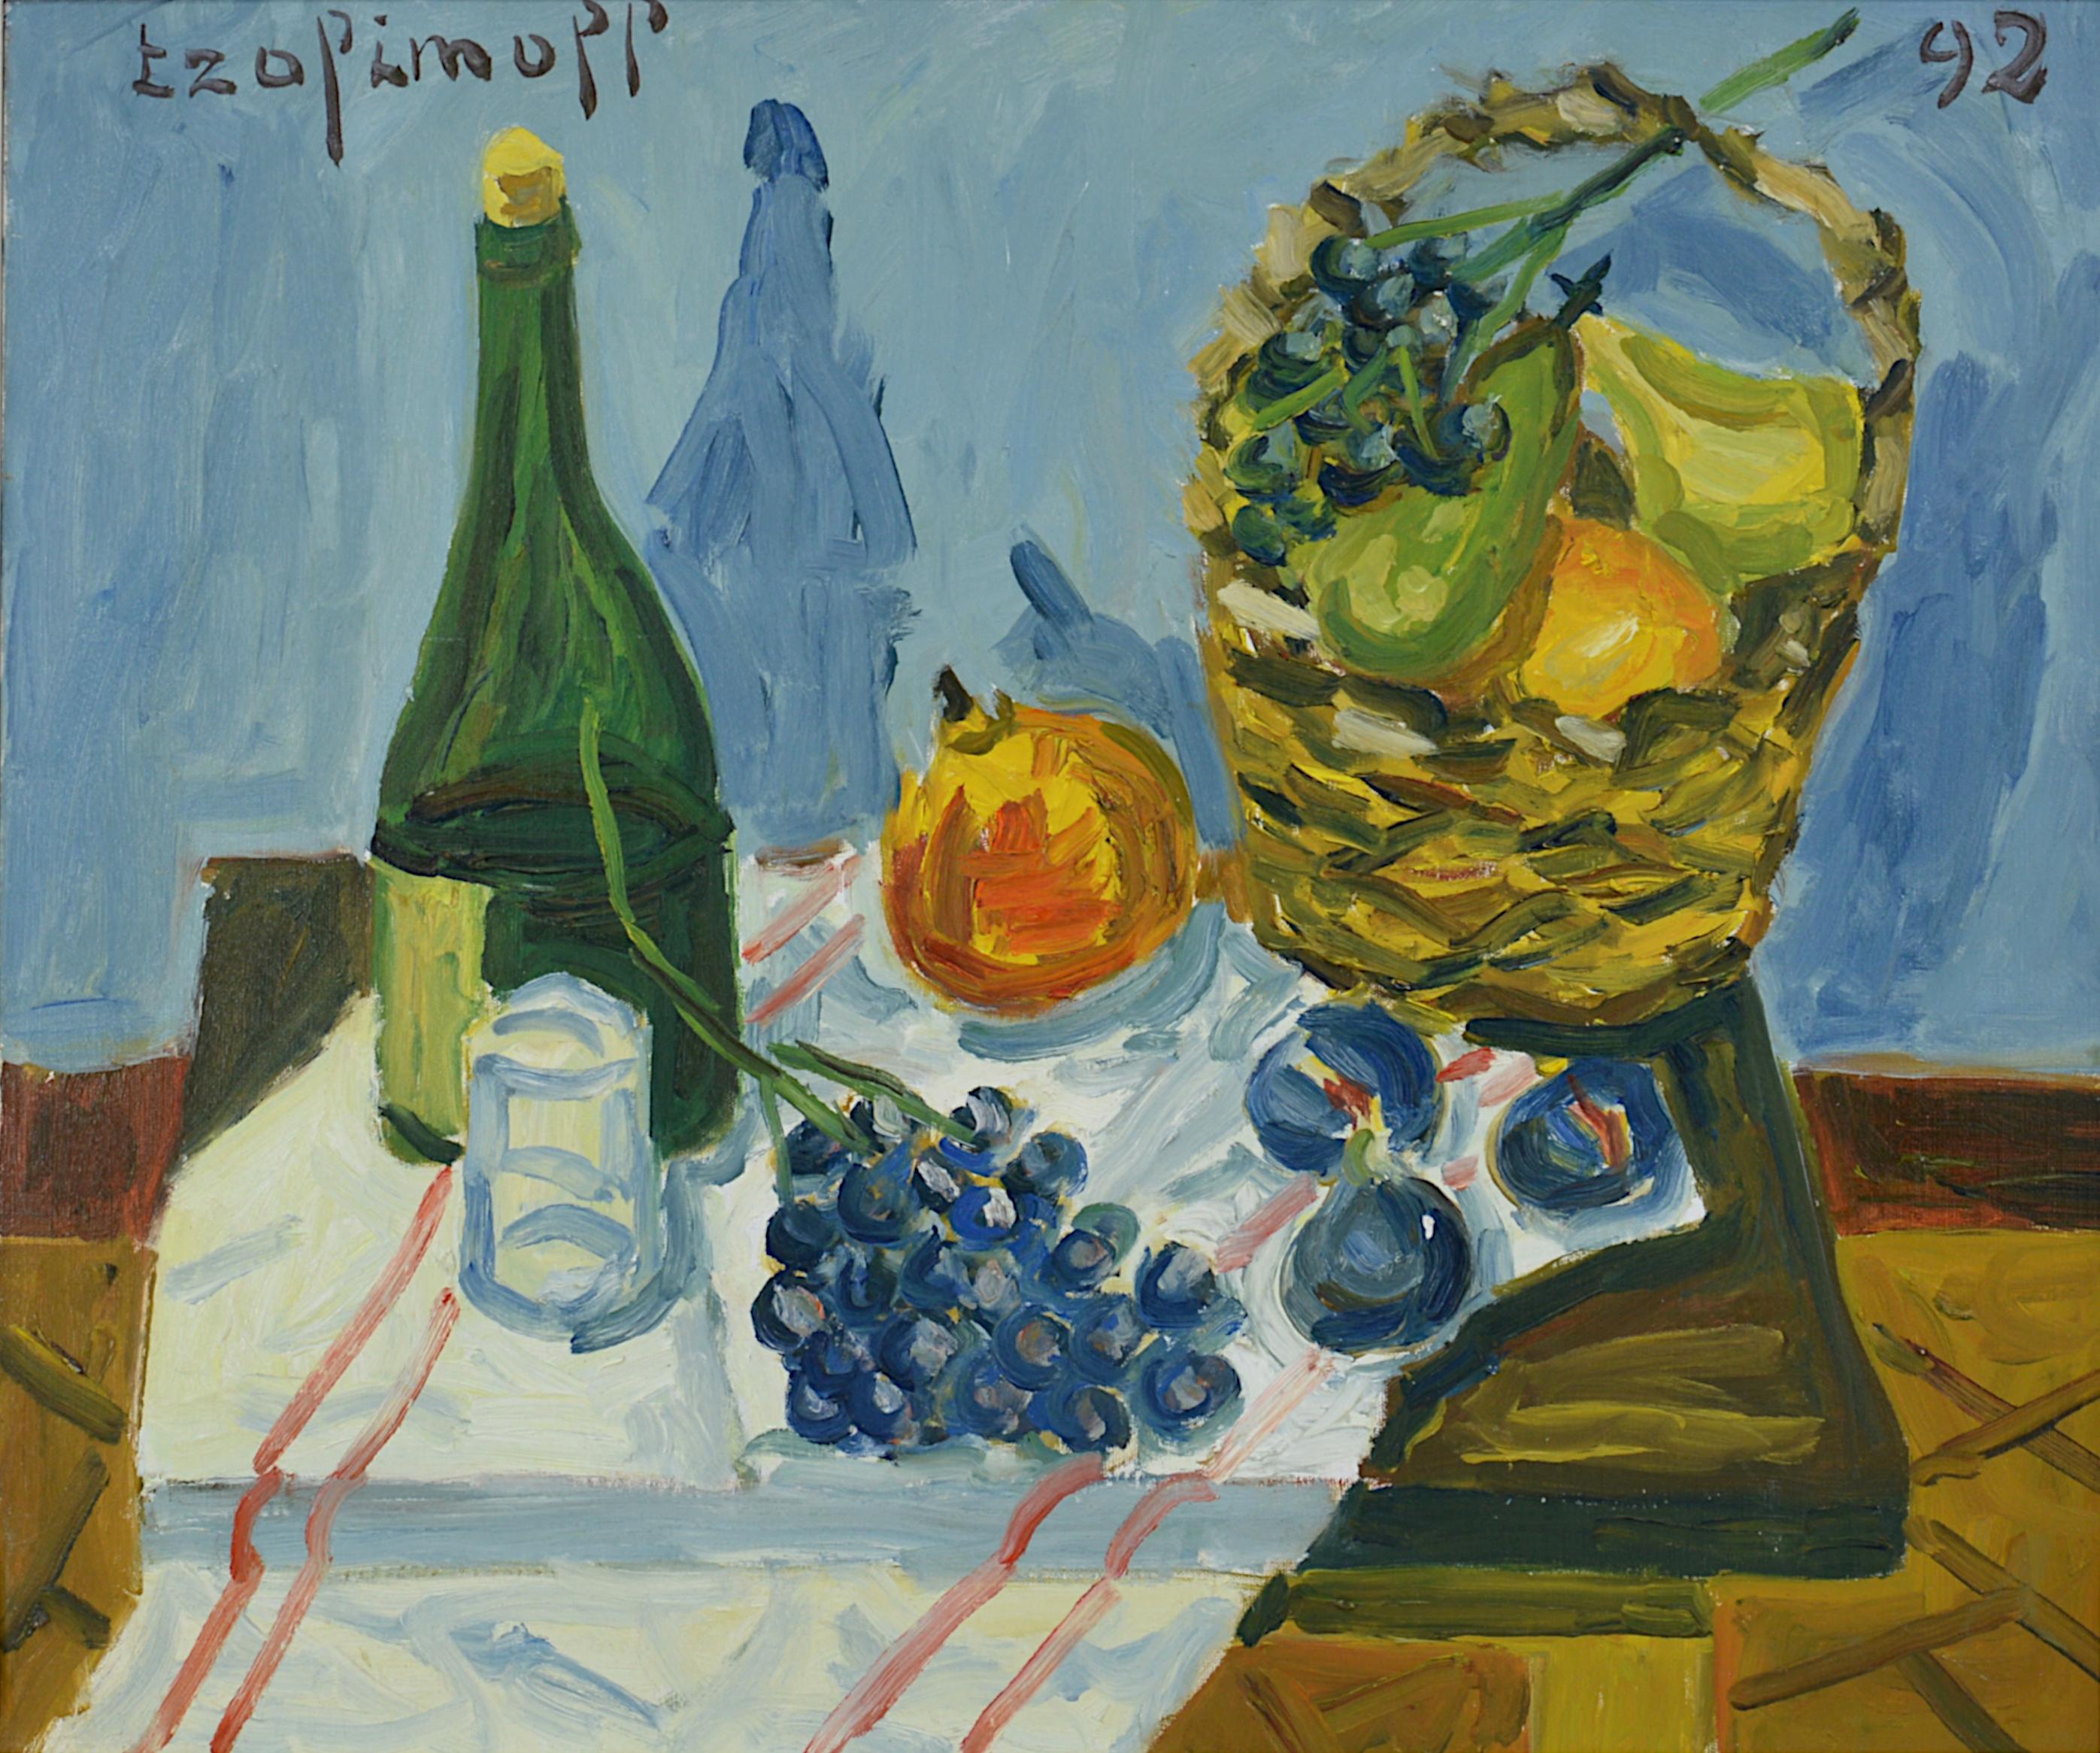 Pierre TROFIMOFF, Stillleben mit Korb, Öl auf Leinwand, 1992 – Painting von Pierre Trofimoff